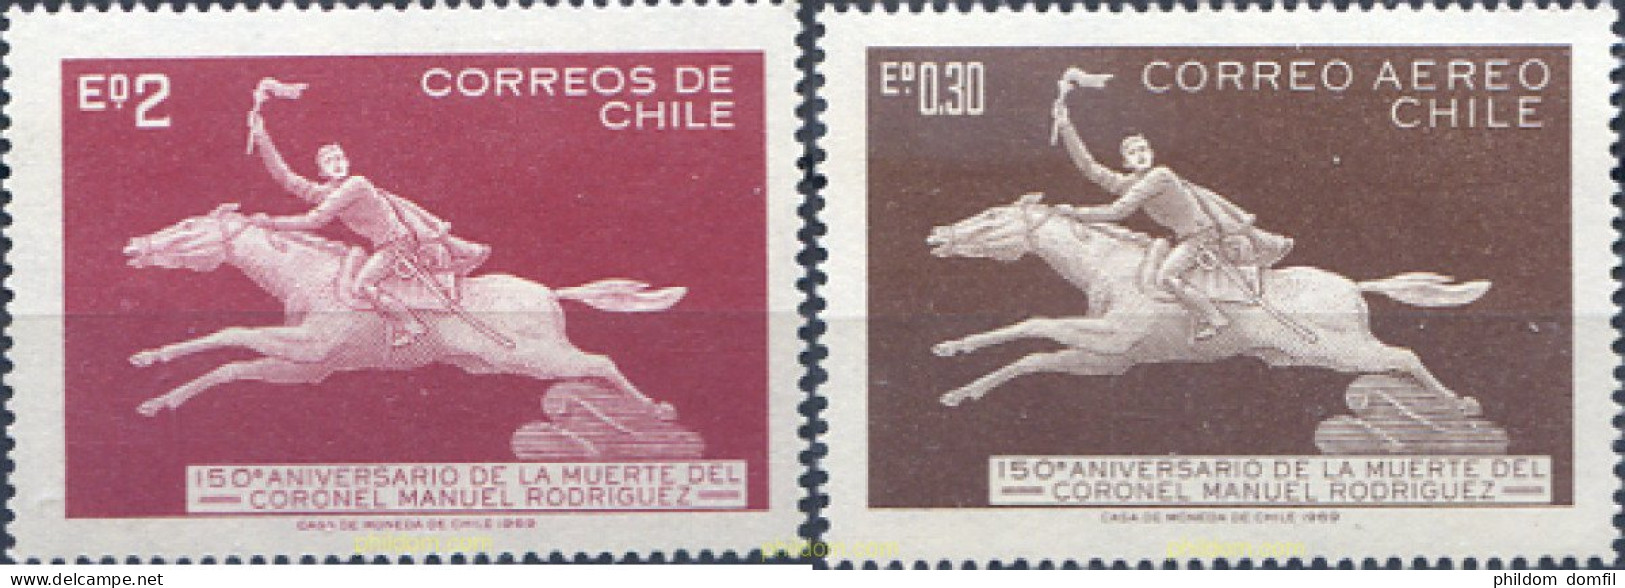 303275 MNH CHILE 1969 150 ANIVERSARIO DE LA MUERTE DEL CORONEL MANUEL RODRIGUEZ - Chili